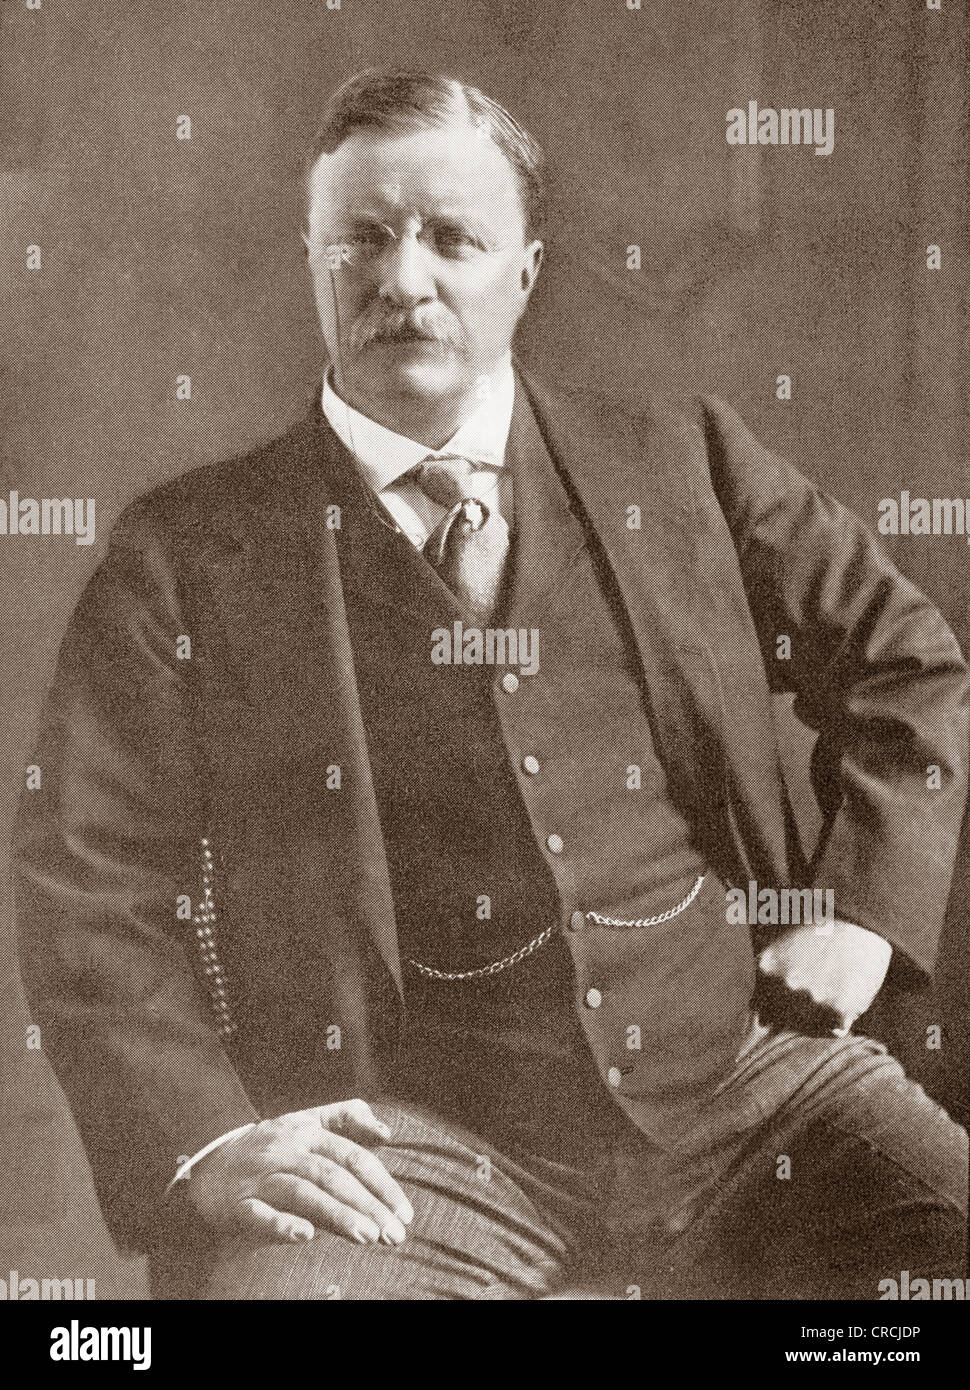 Theodore "Teddy" Roosevelt, 1858-1919. 26. Präsident der Vereinigten Staaten von Amerika. Aus dem Jahr 1910 illustriert. Stockfoto